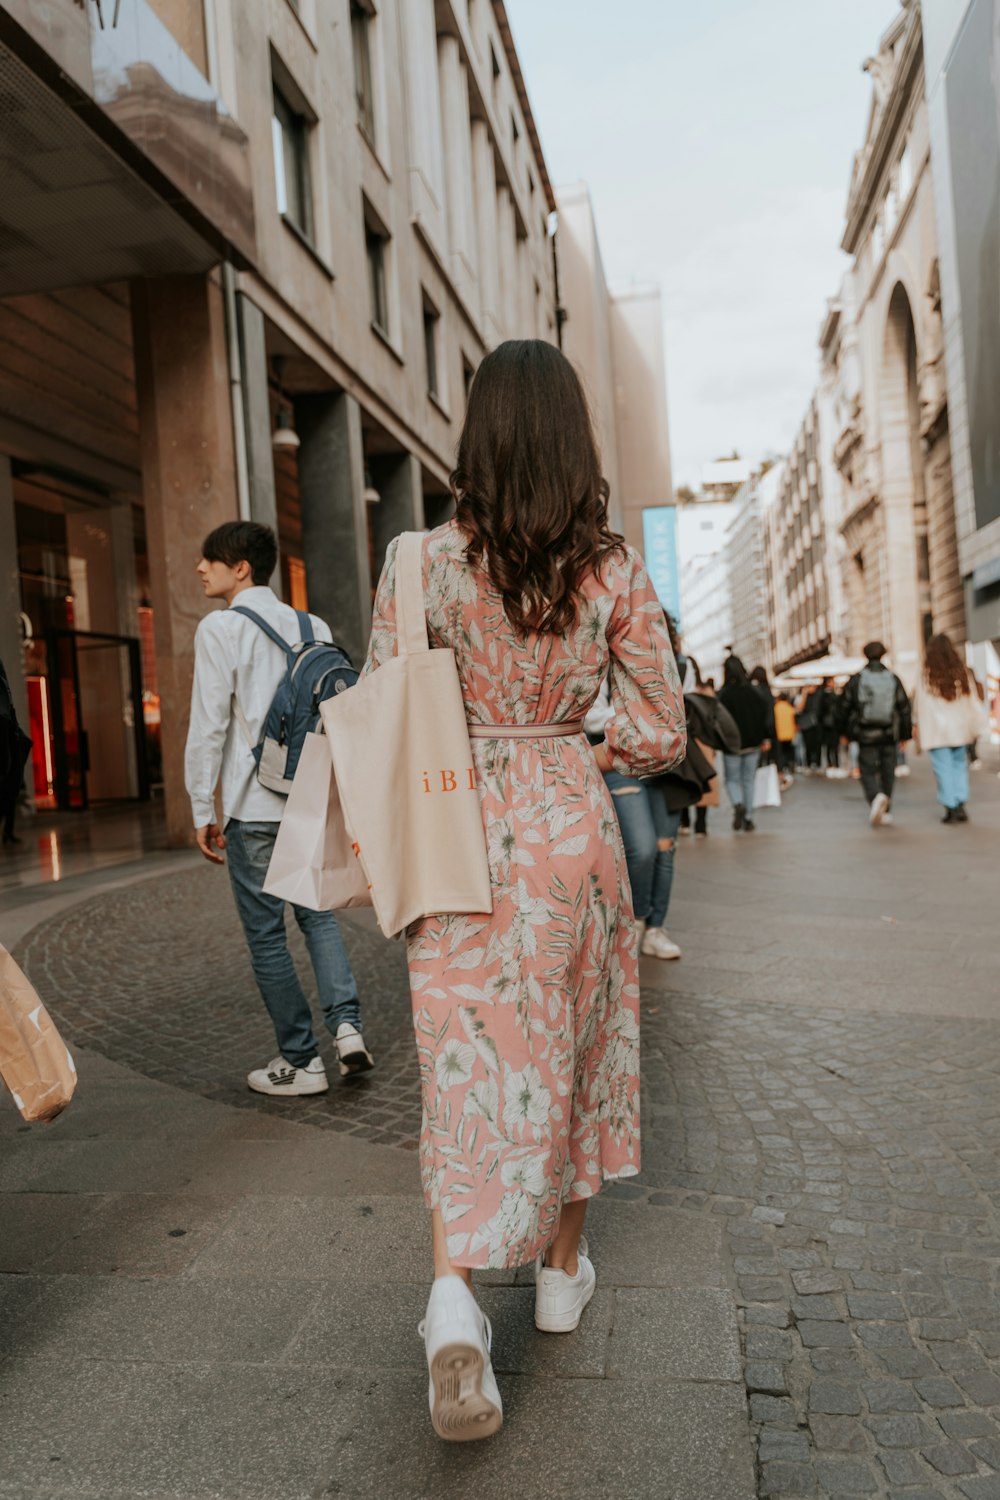 Eine Frau geht mit Einkaufstüten eine Straße entlang